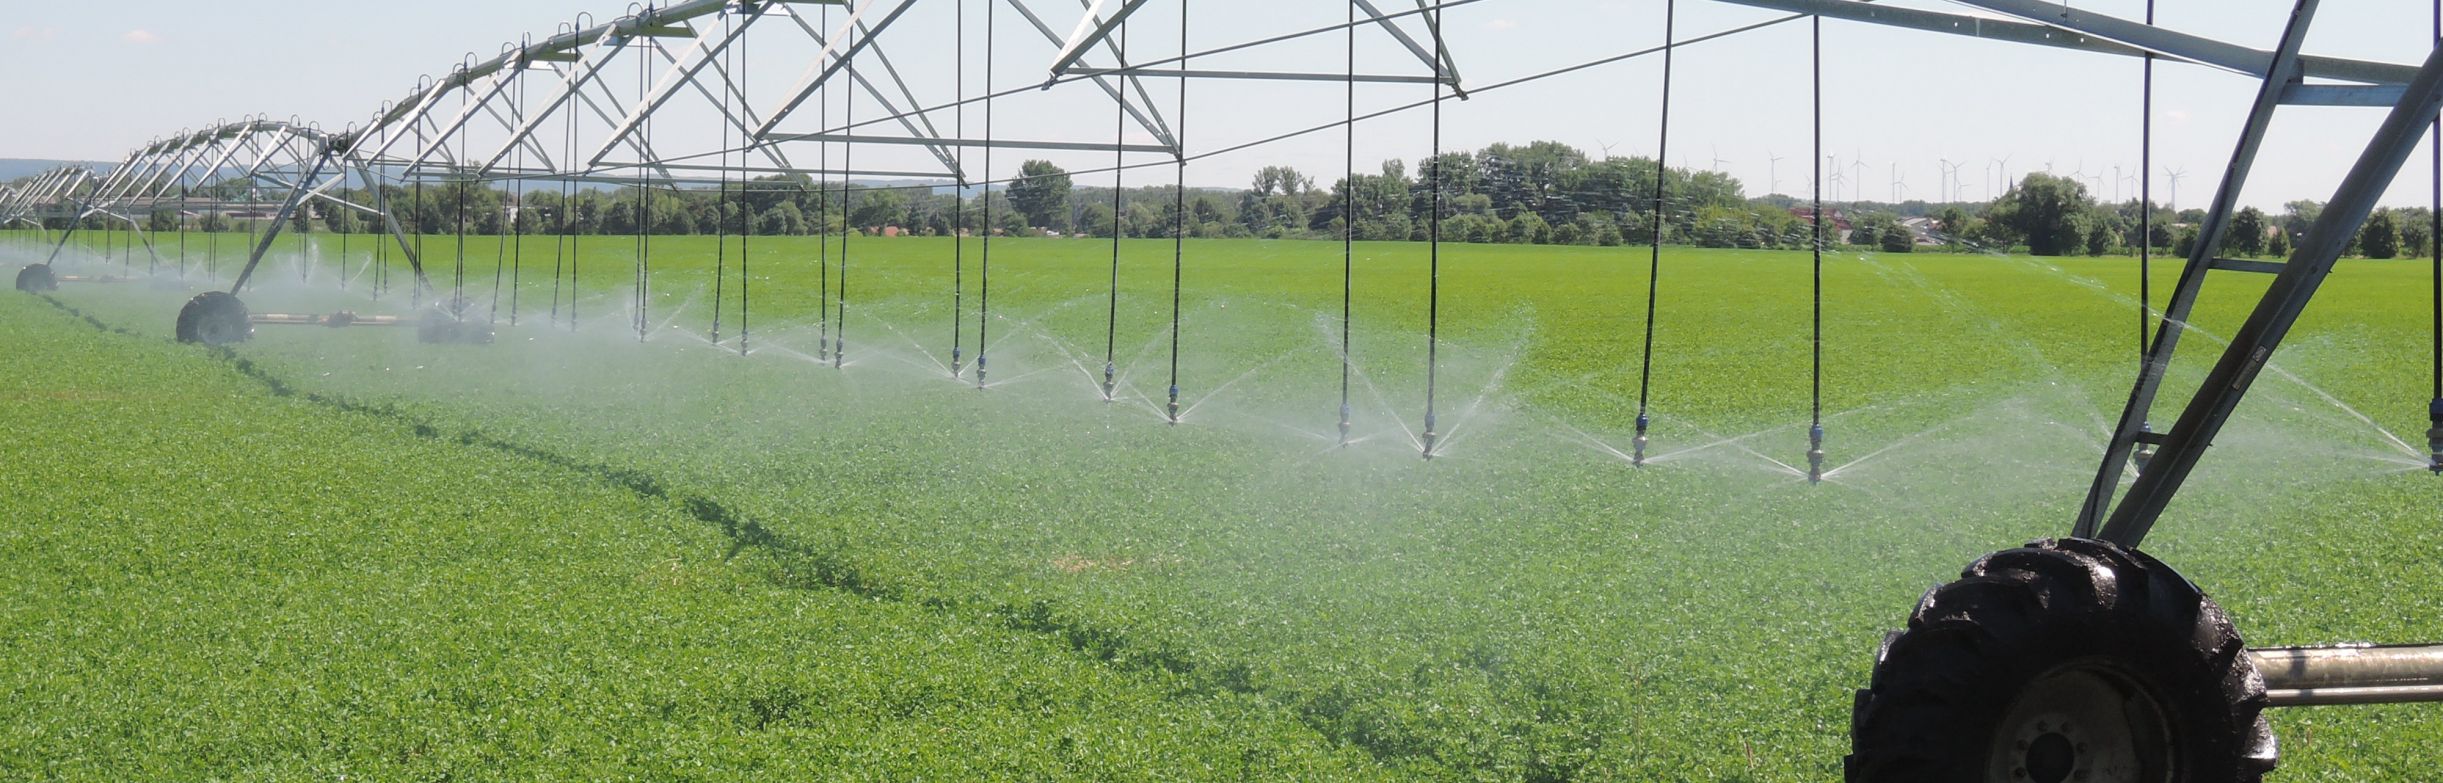 Wasserdüsen eines Kreisberegnungssystems verteilen Wasser auf einem grünen Acker